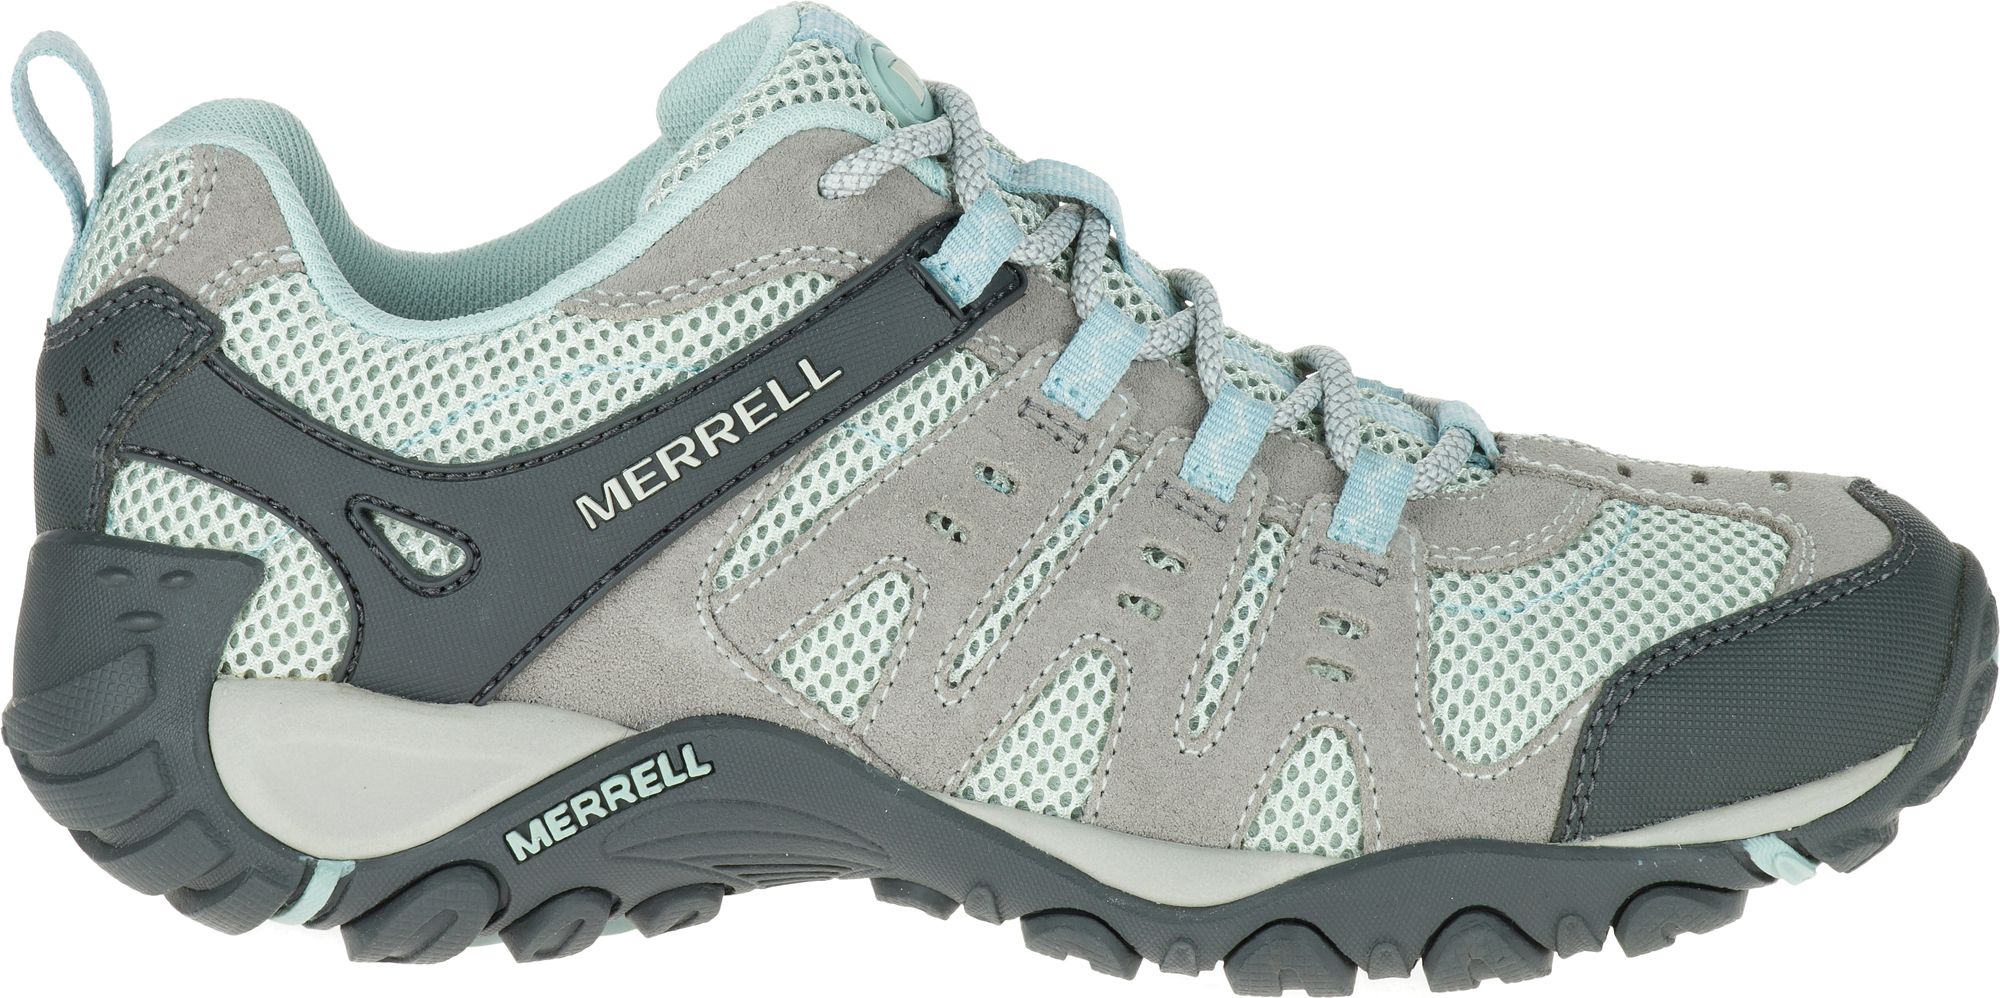 merrell slip on walking shoes